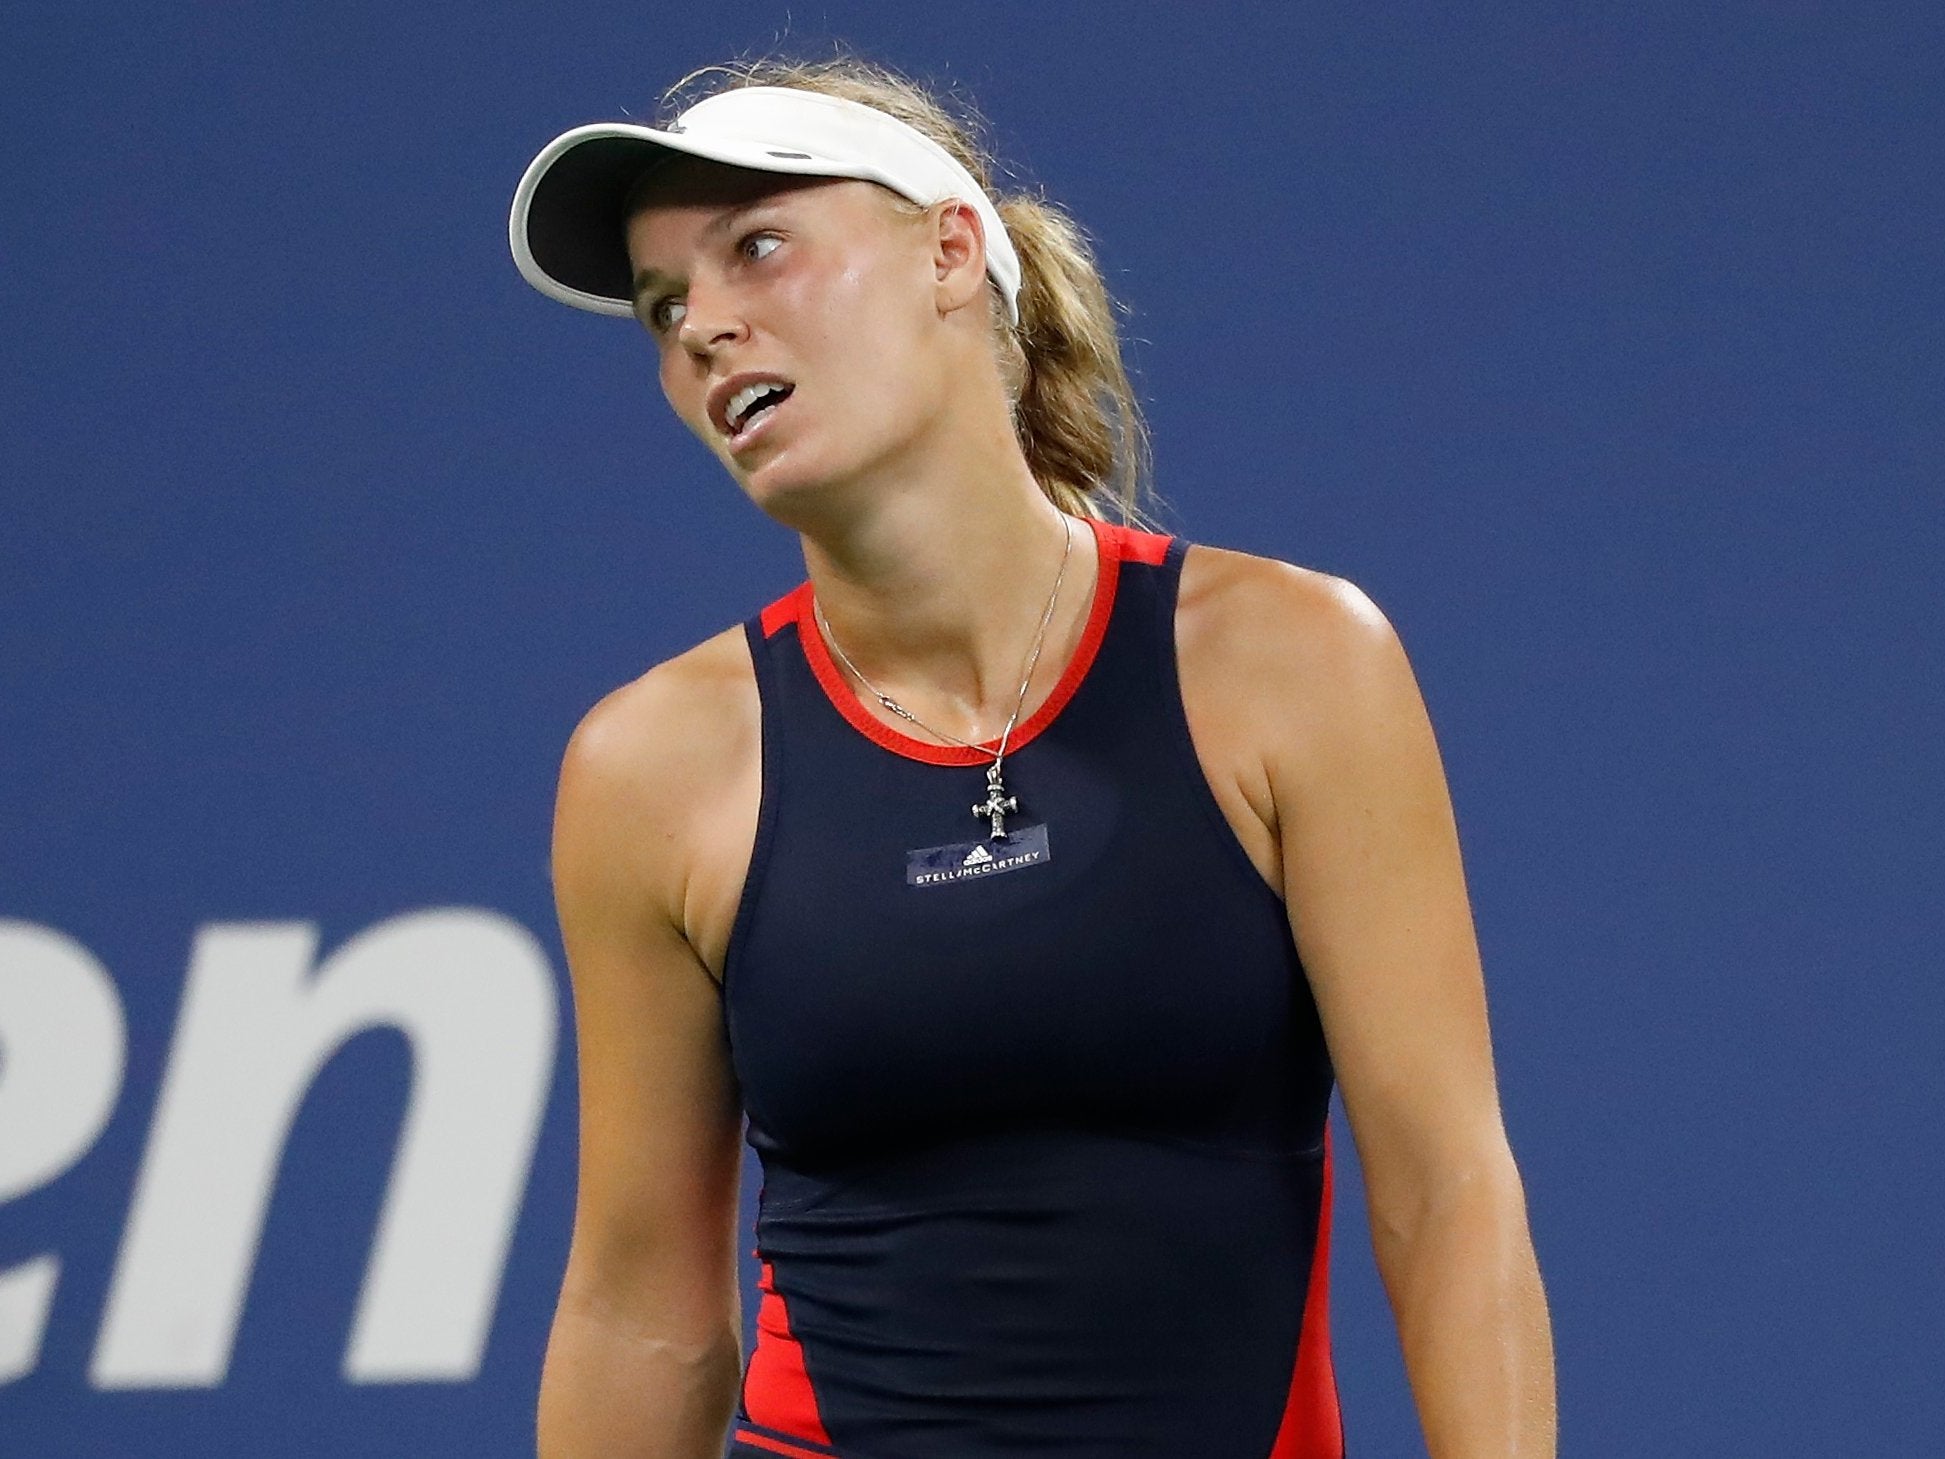 Caroline Wozniacki was knocked out of the US Open by Lesia Tsurenko